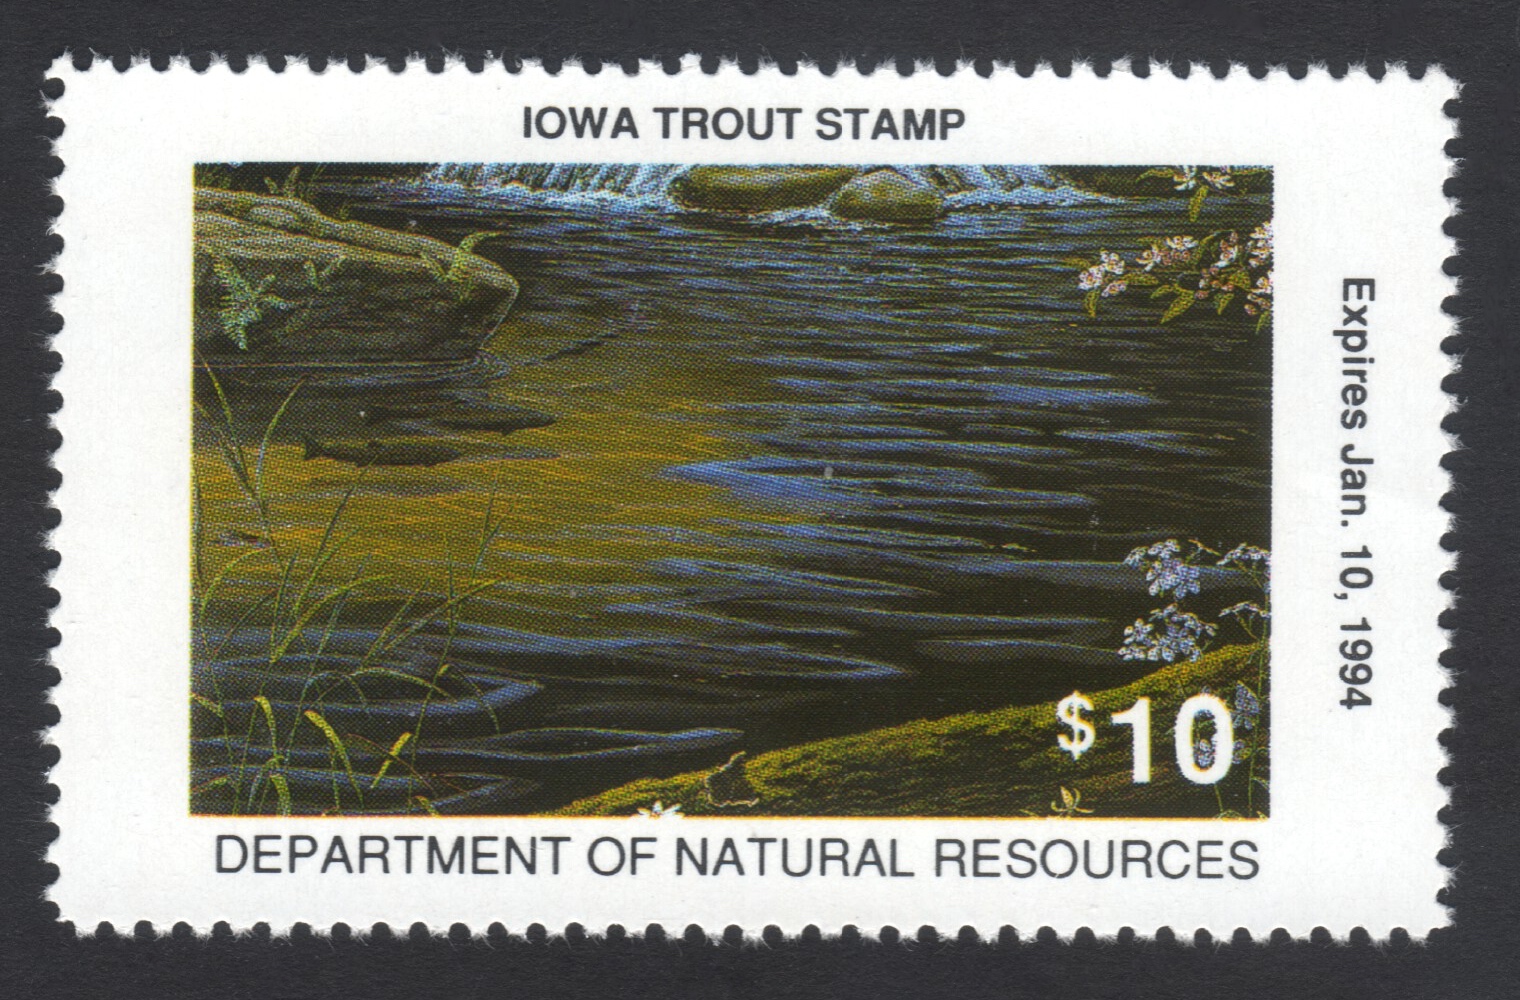 1993-94 Iowa Trout